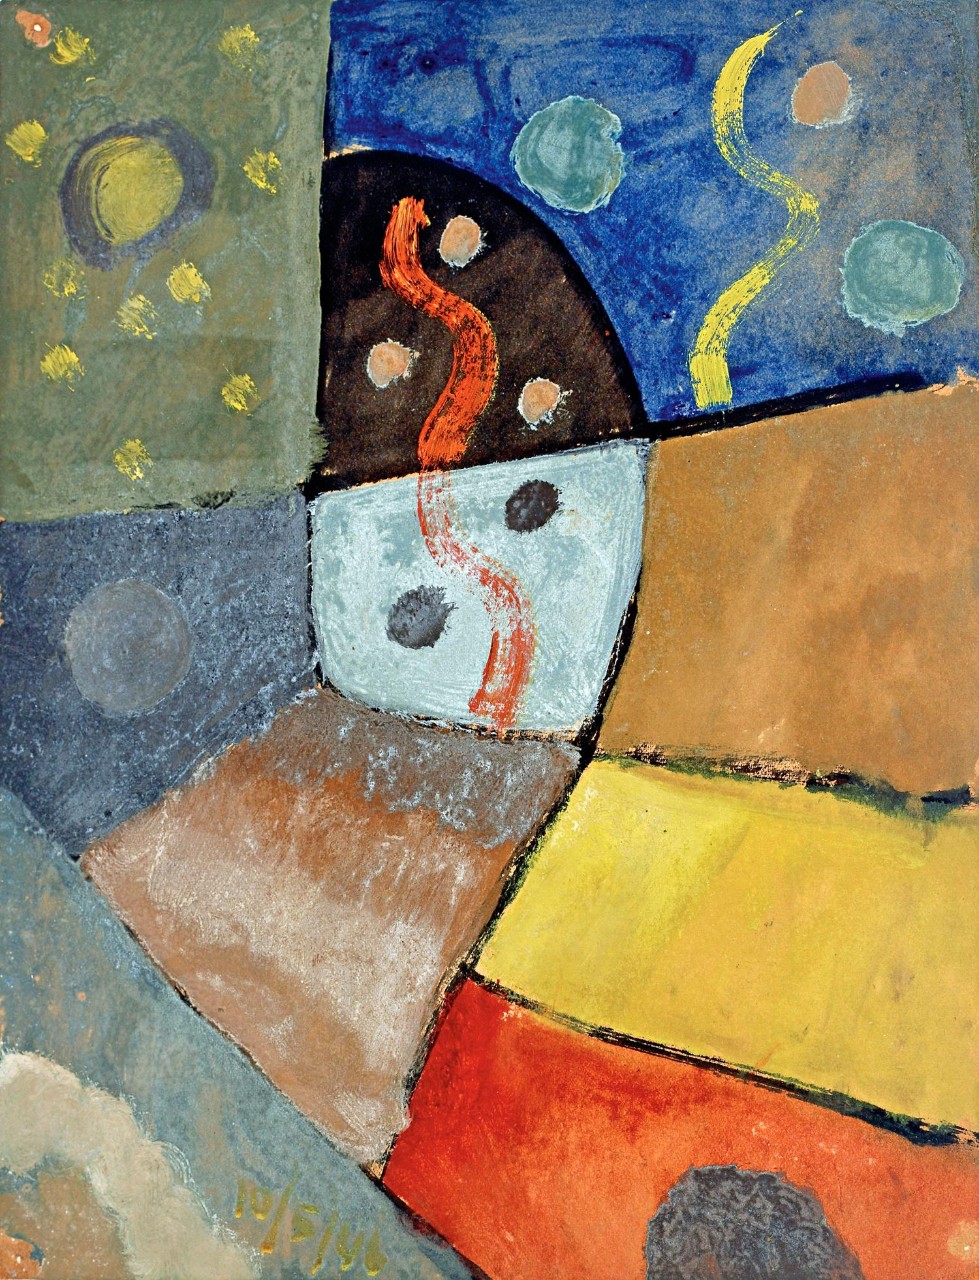 Esteban Lisa (1895–1983), Composición (Composition), c. 1946 _ oil on cardboard, 30 x 23 cm, private collection © Fundación Esteban Lisa